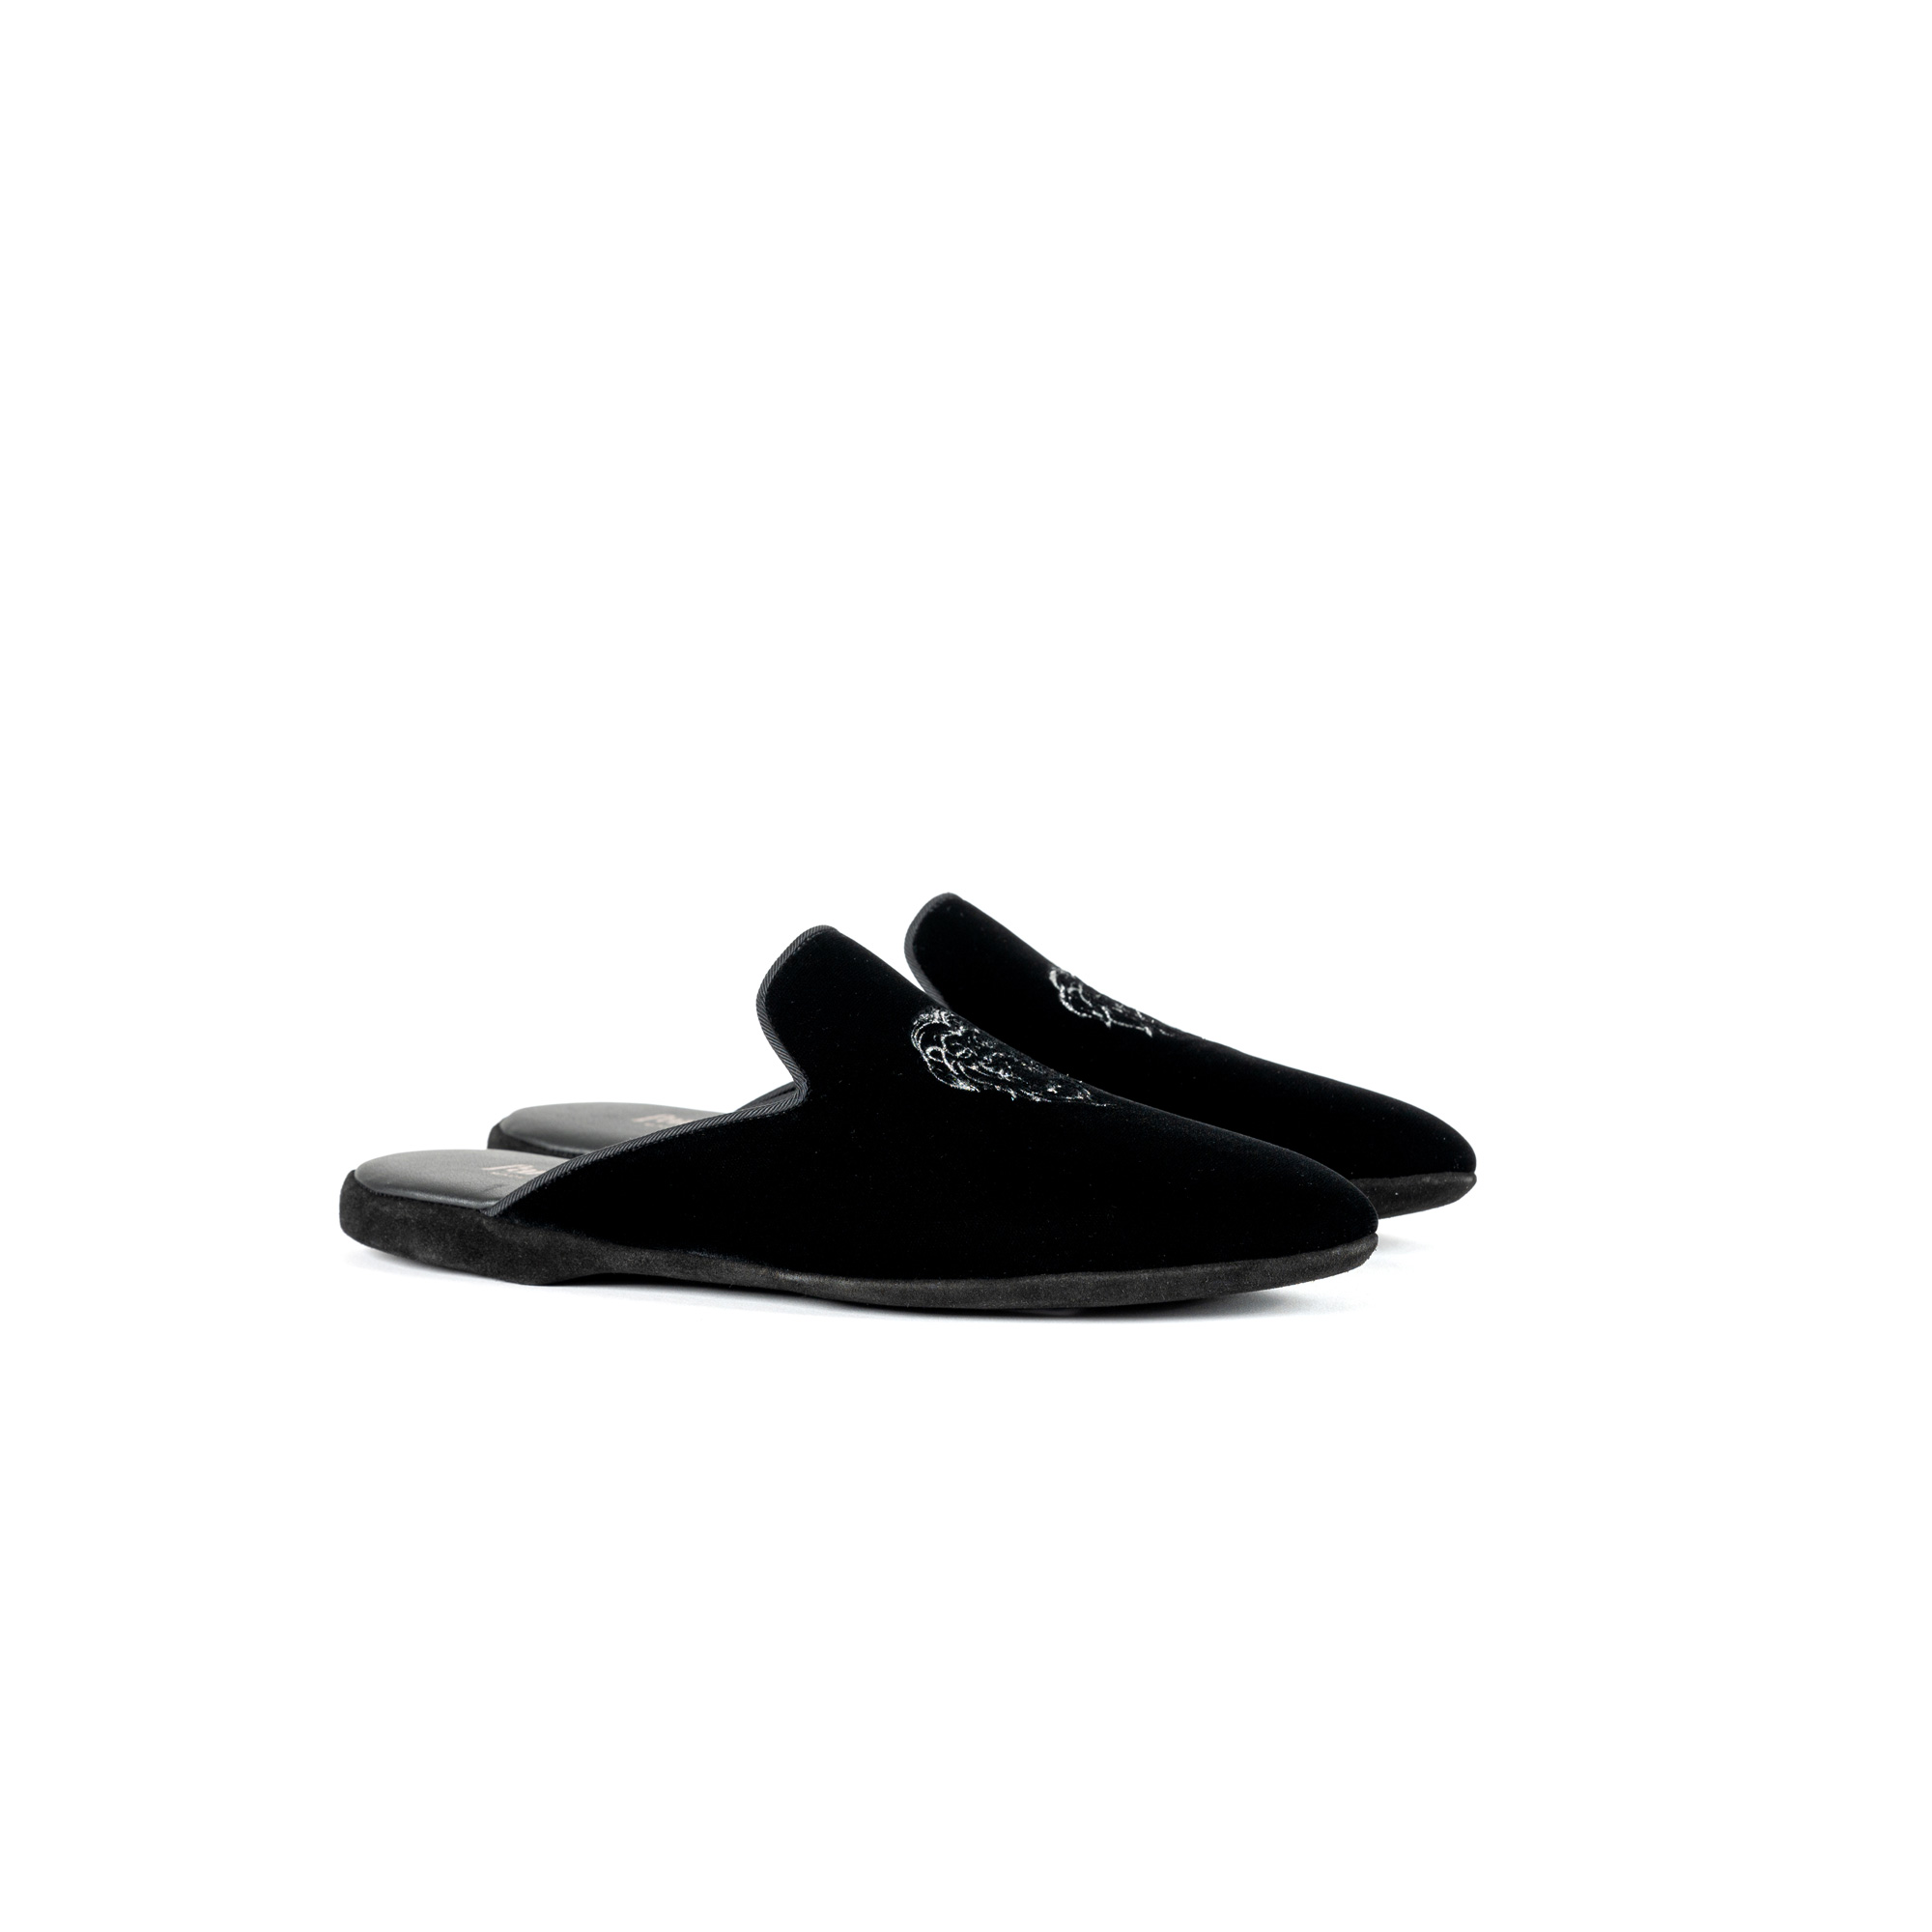 Pantofola interno sera in velluto nero - Farfalla italian slippers